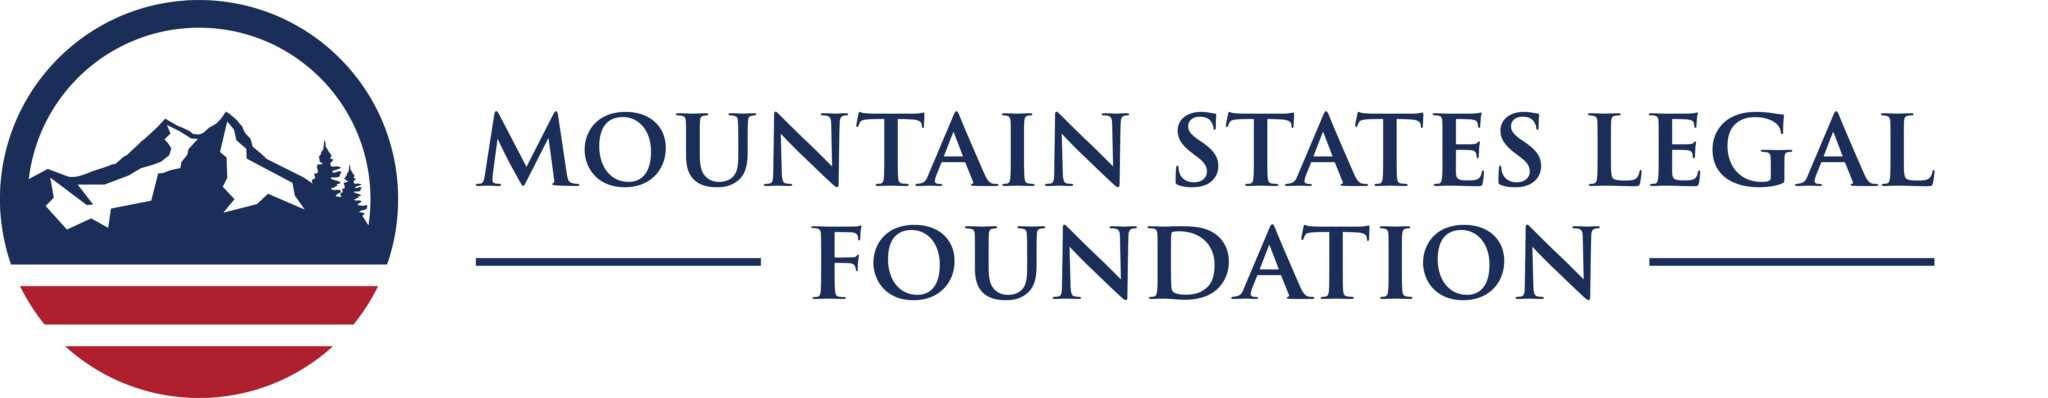 Mountain States Legal Foundation